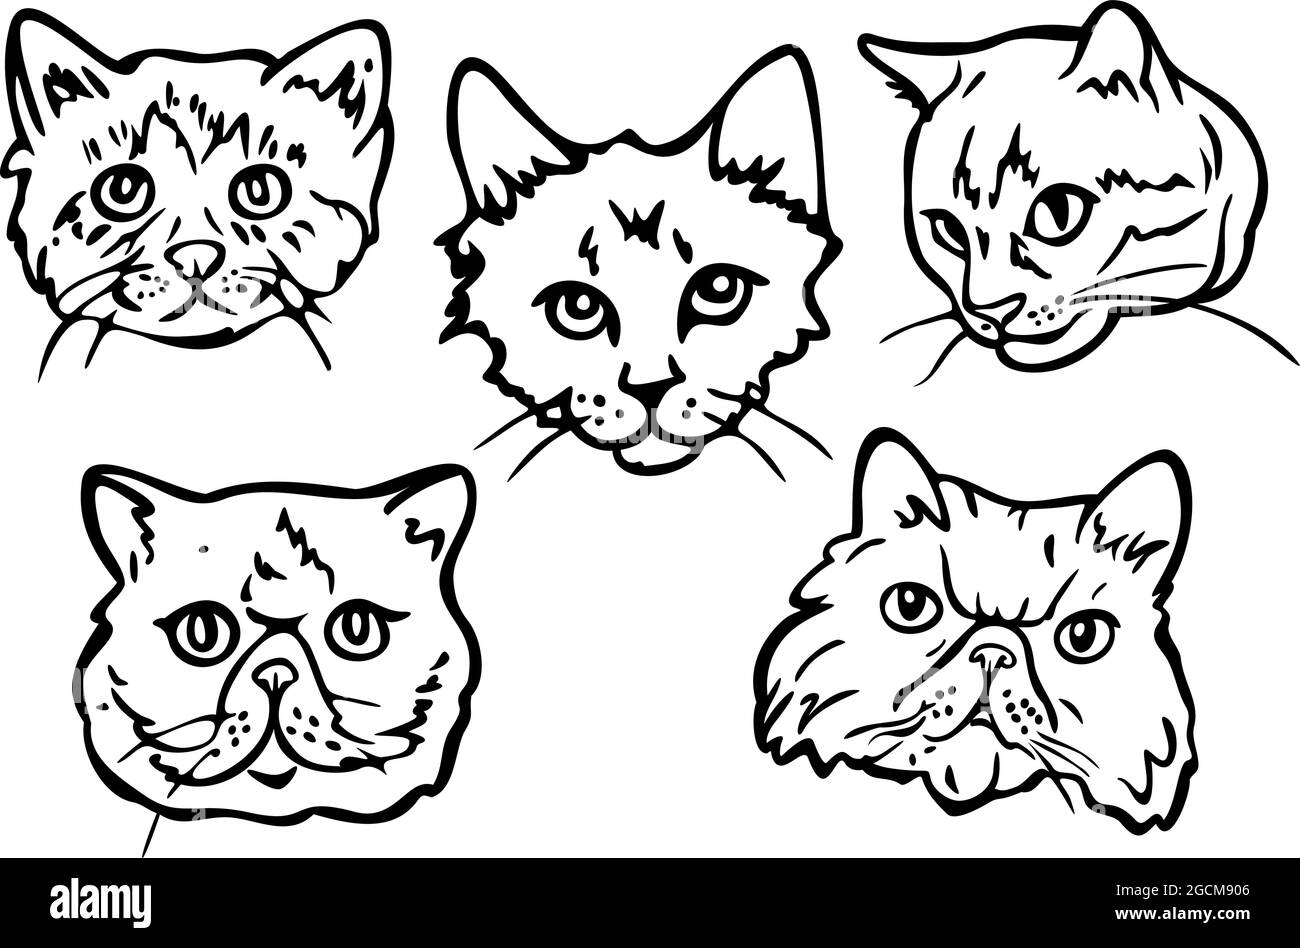 Jeu d'illustrations vectorielles avec contours de différentes faces CATS. Portraits de chats dessinés à la main. Illustration de Vecteur